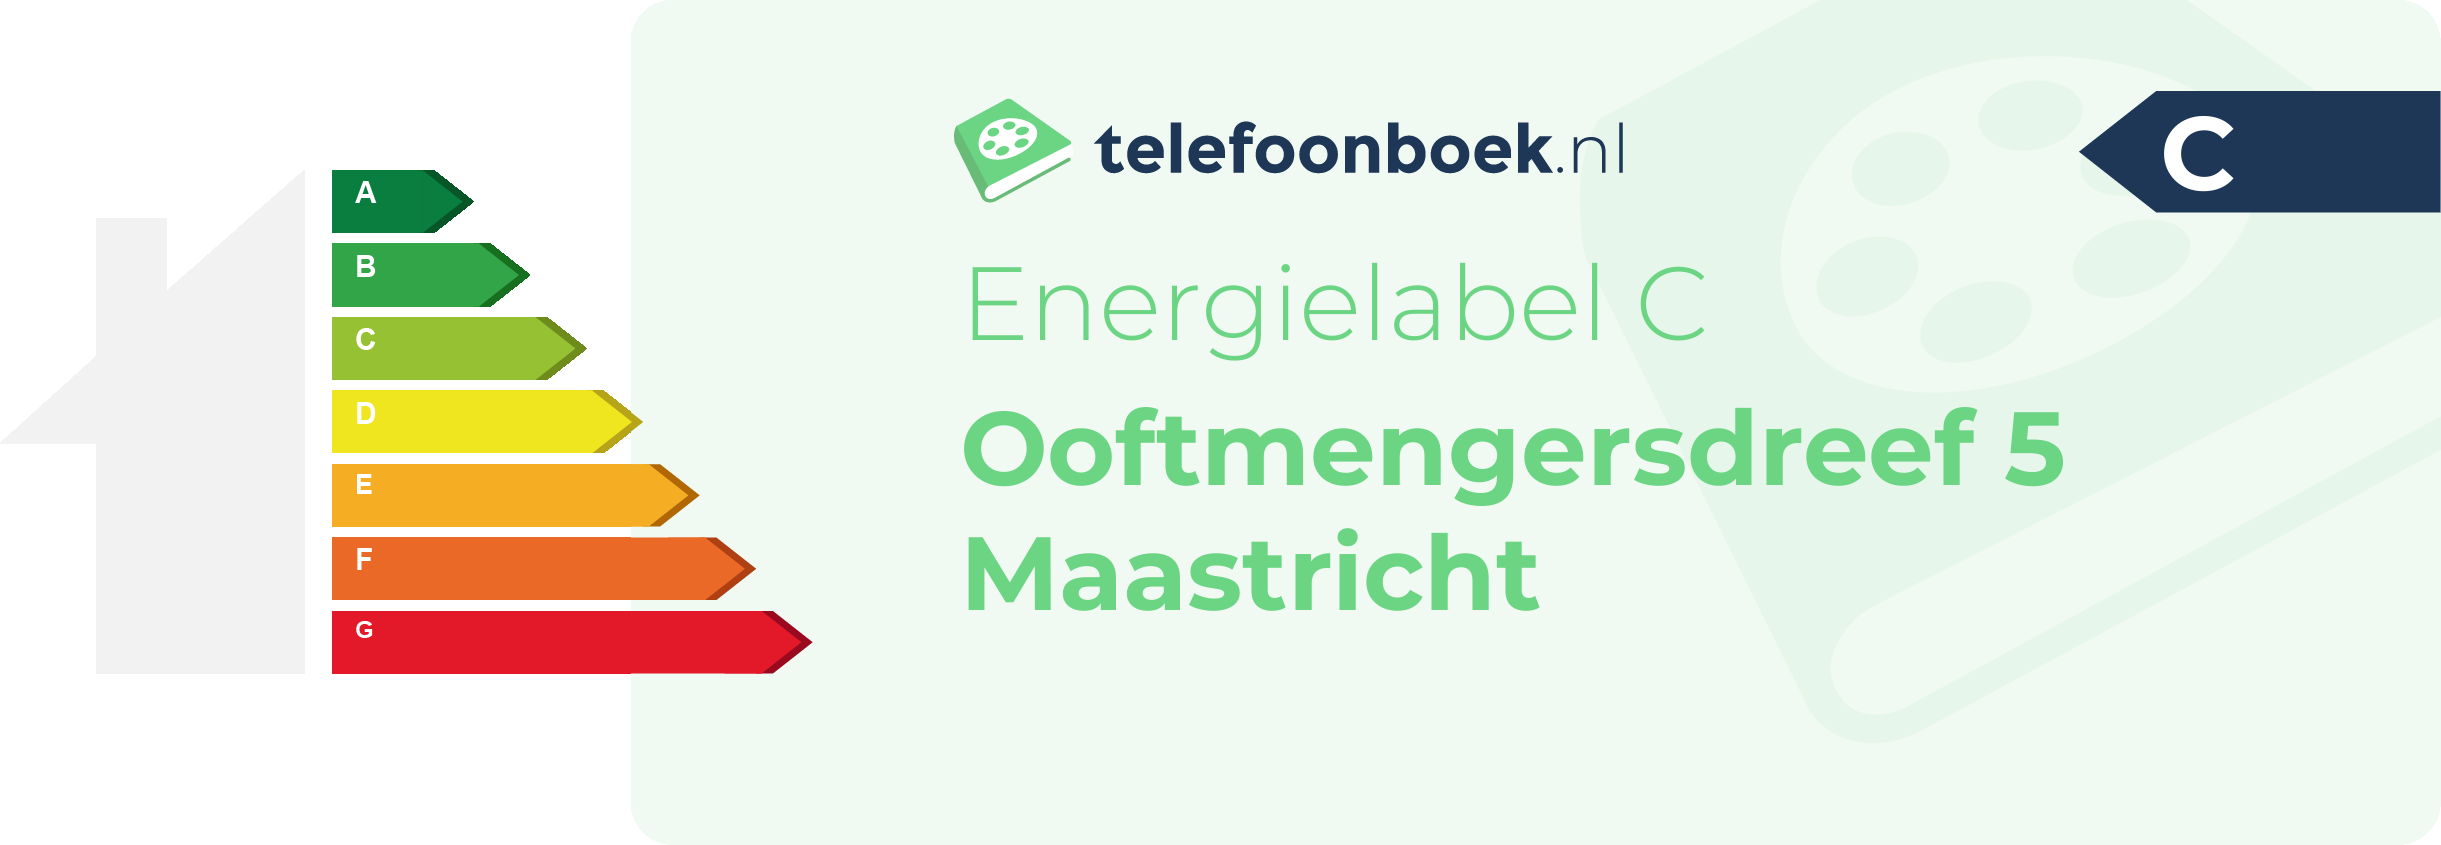 Energielabel Ooftmengersdreef 5 Maastricht